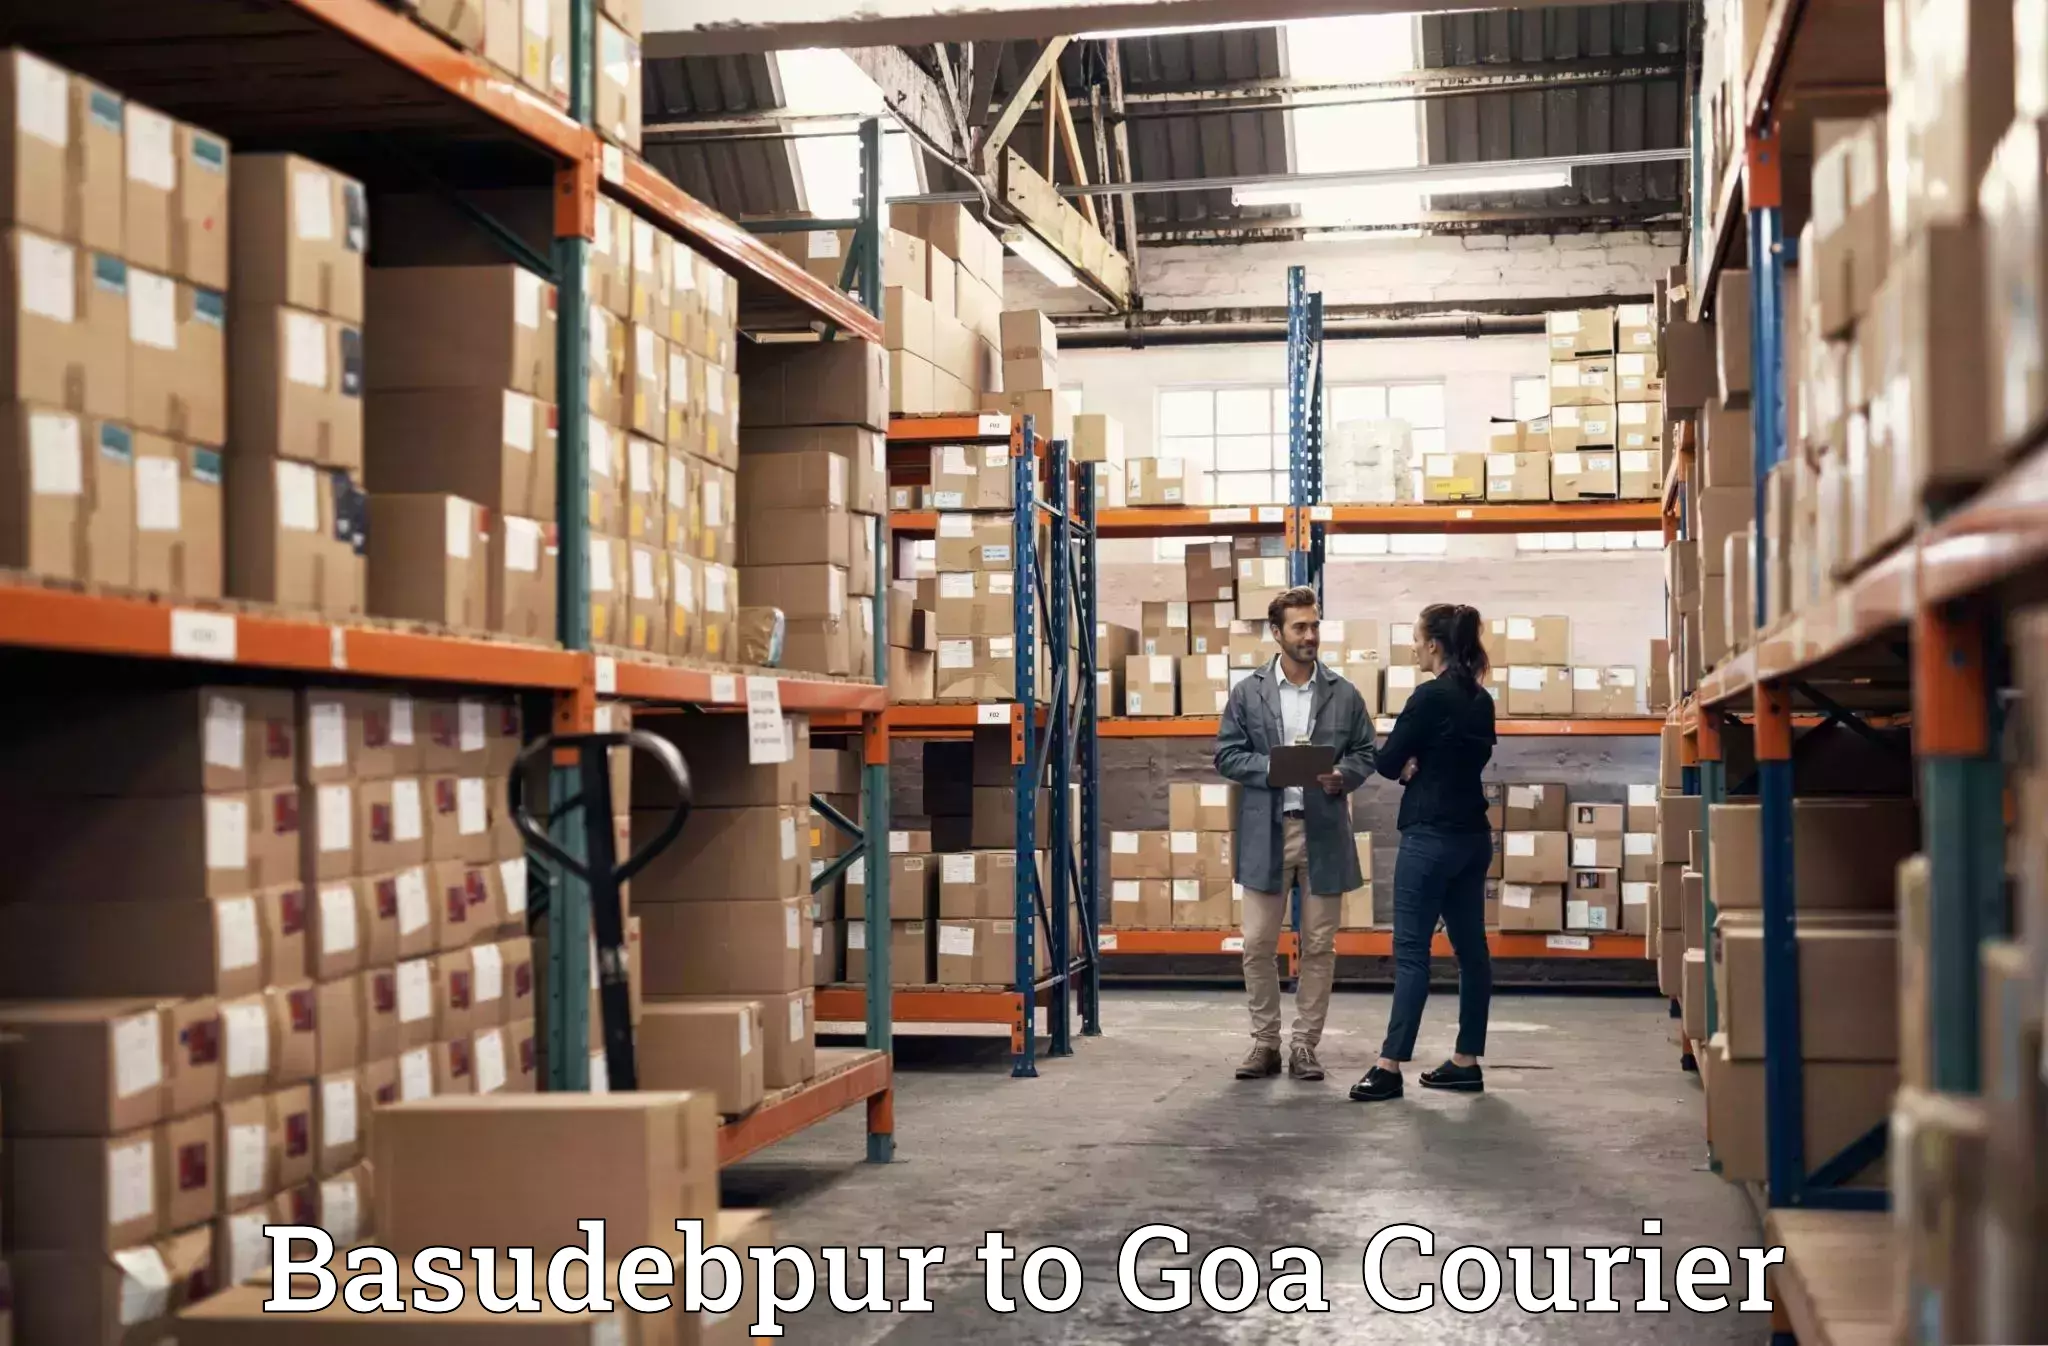 Quality moving company Basudebpur to Panaji